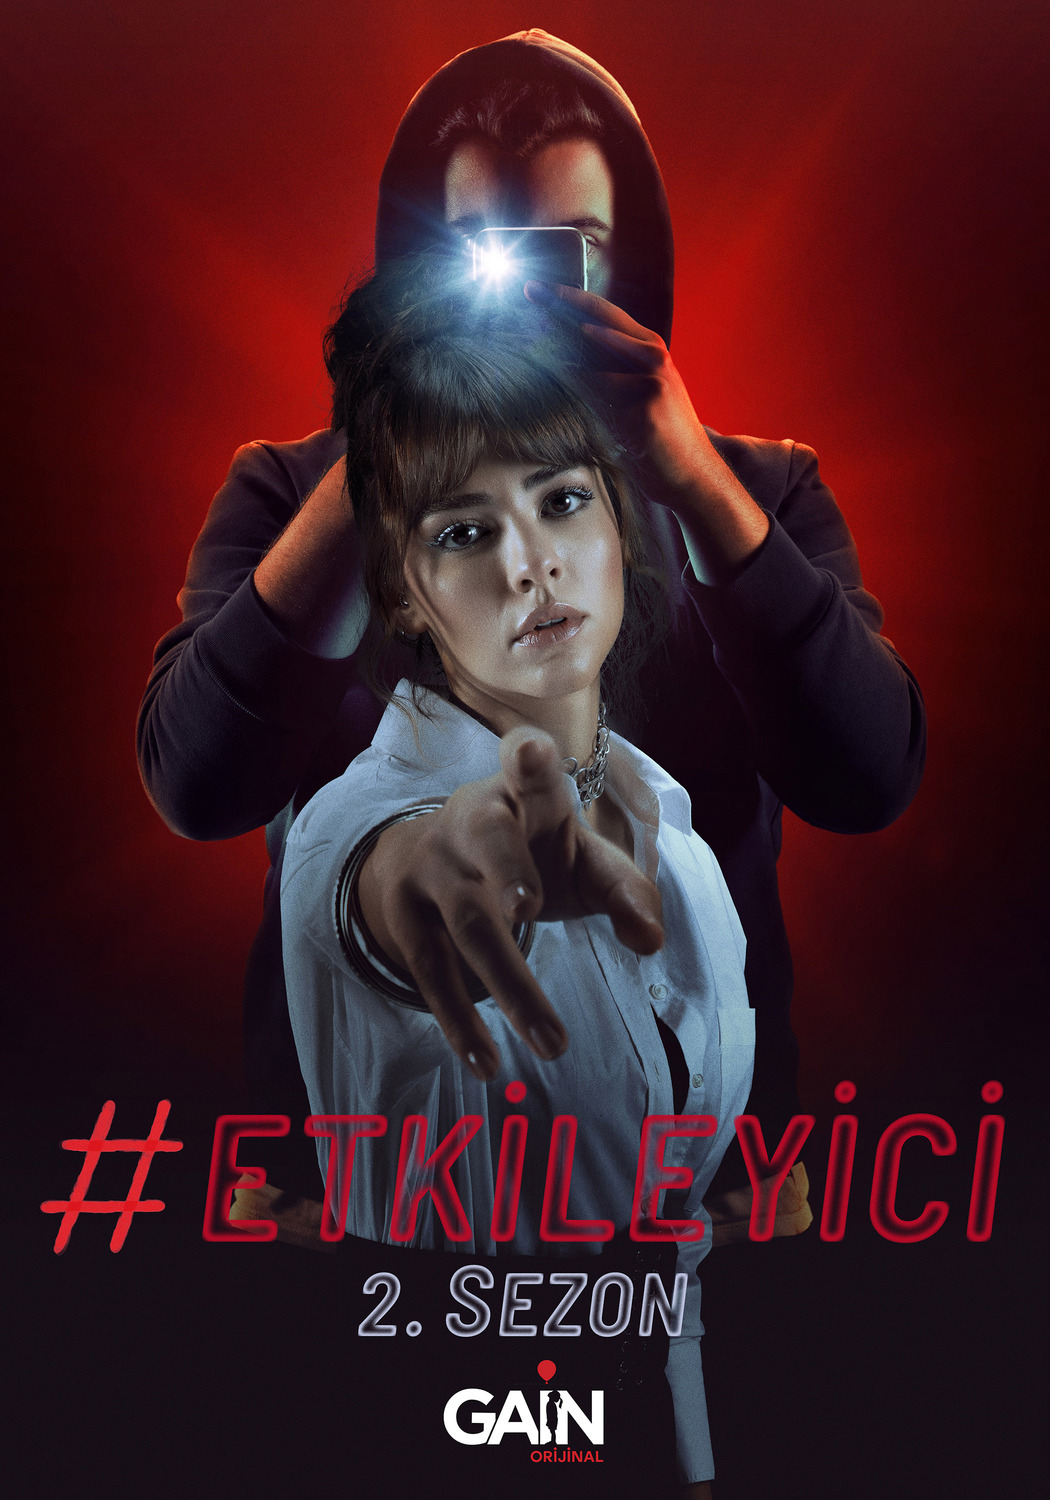 Extra Large TV Poster Image for Etkileyici (#1 of 3)